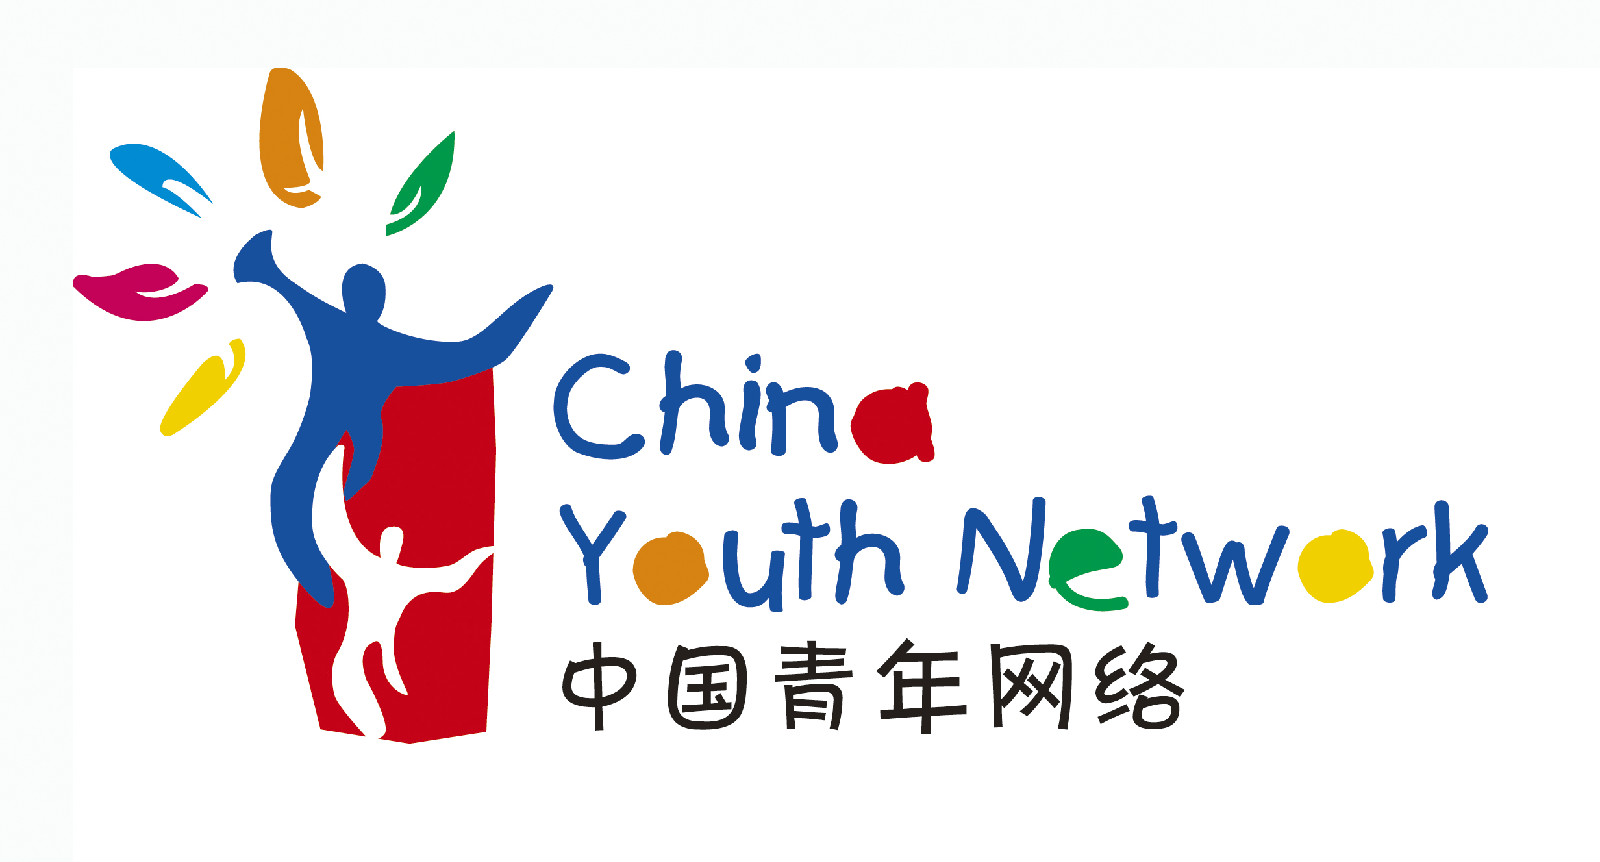 中國青年網路